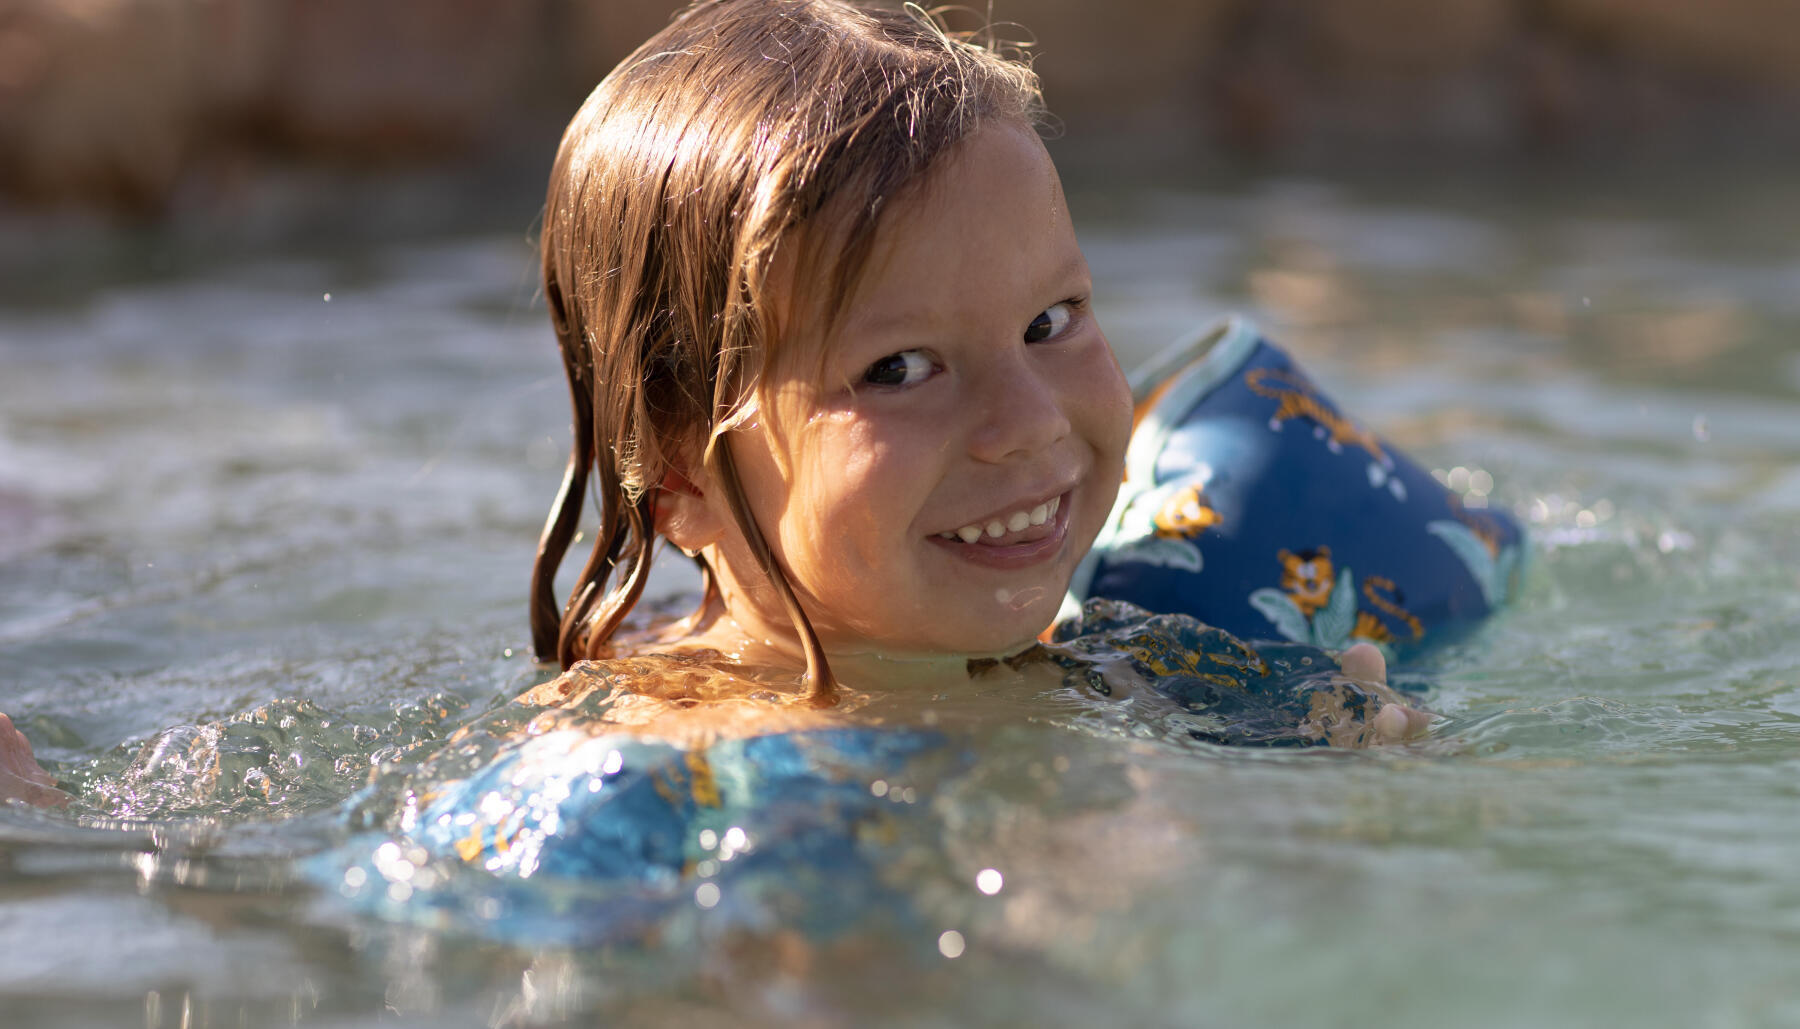 Al agua niños: consejos para que los más pequeños empiecen a nadar